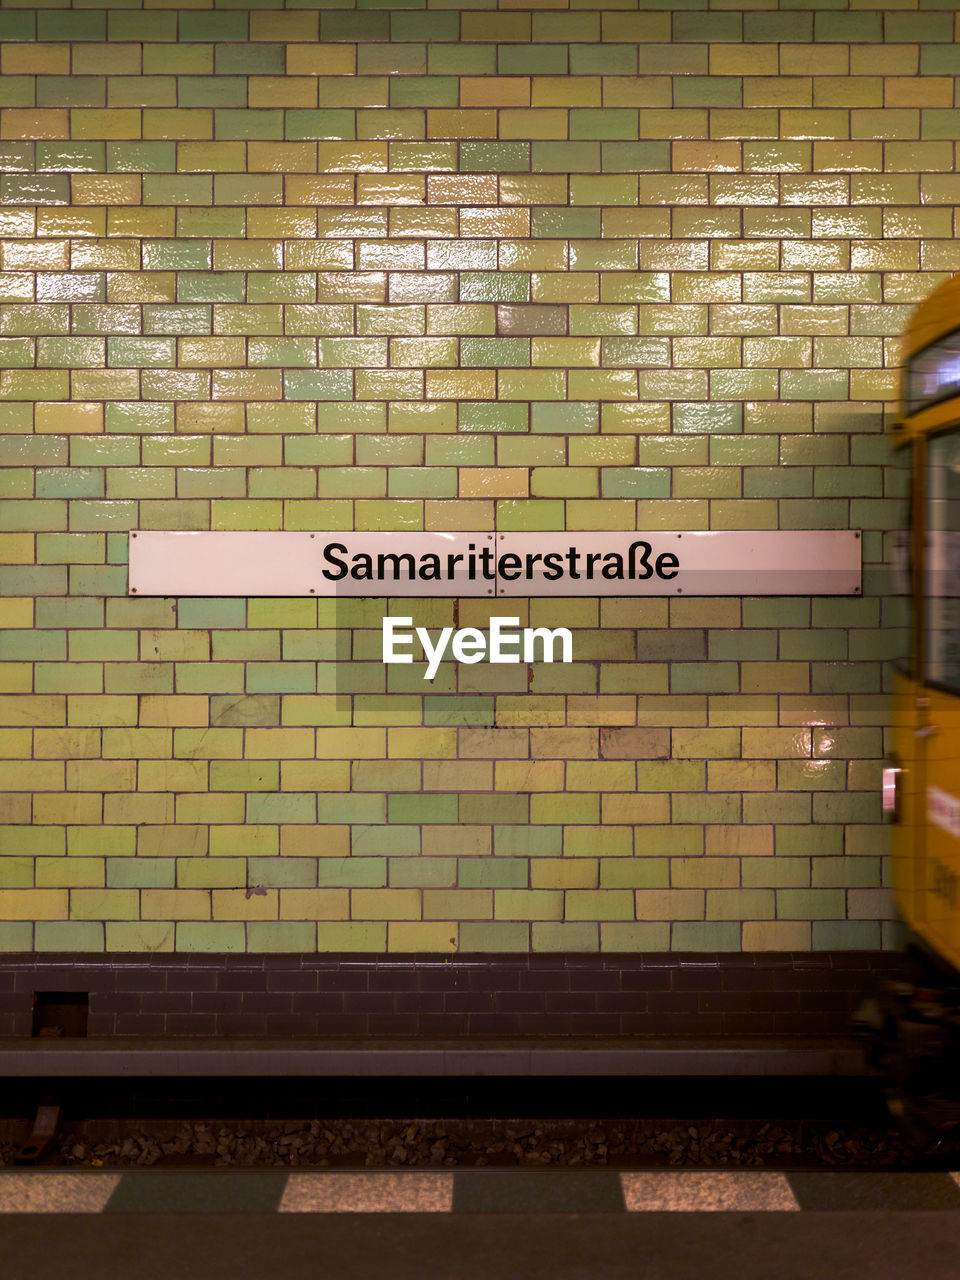 Text on wall at subway station